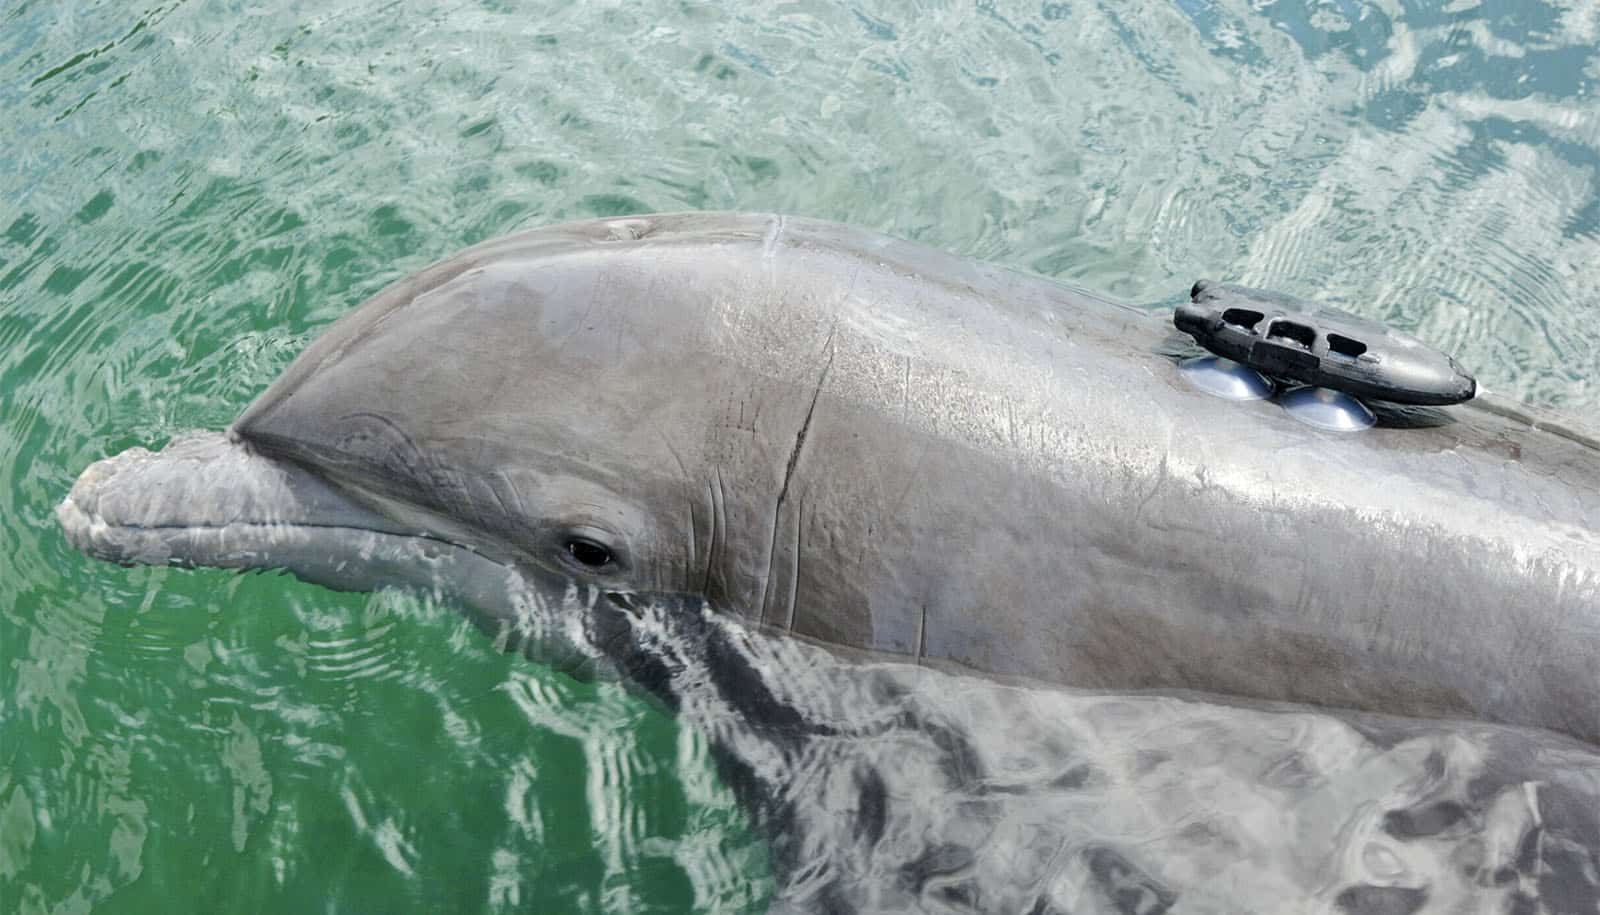 lille sort protesterede fastgjort til delfinens ryg med sugekopper